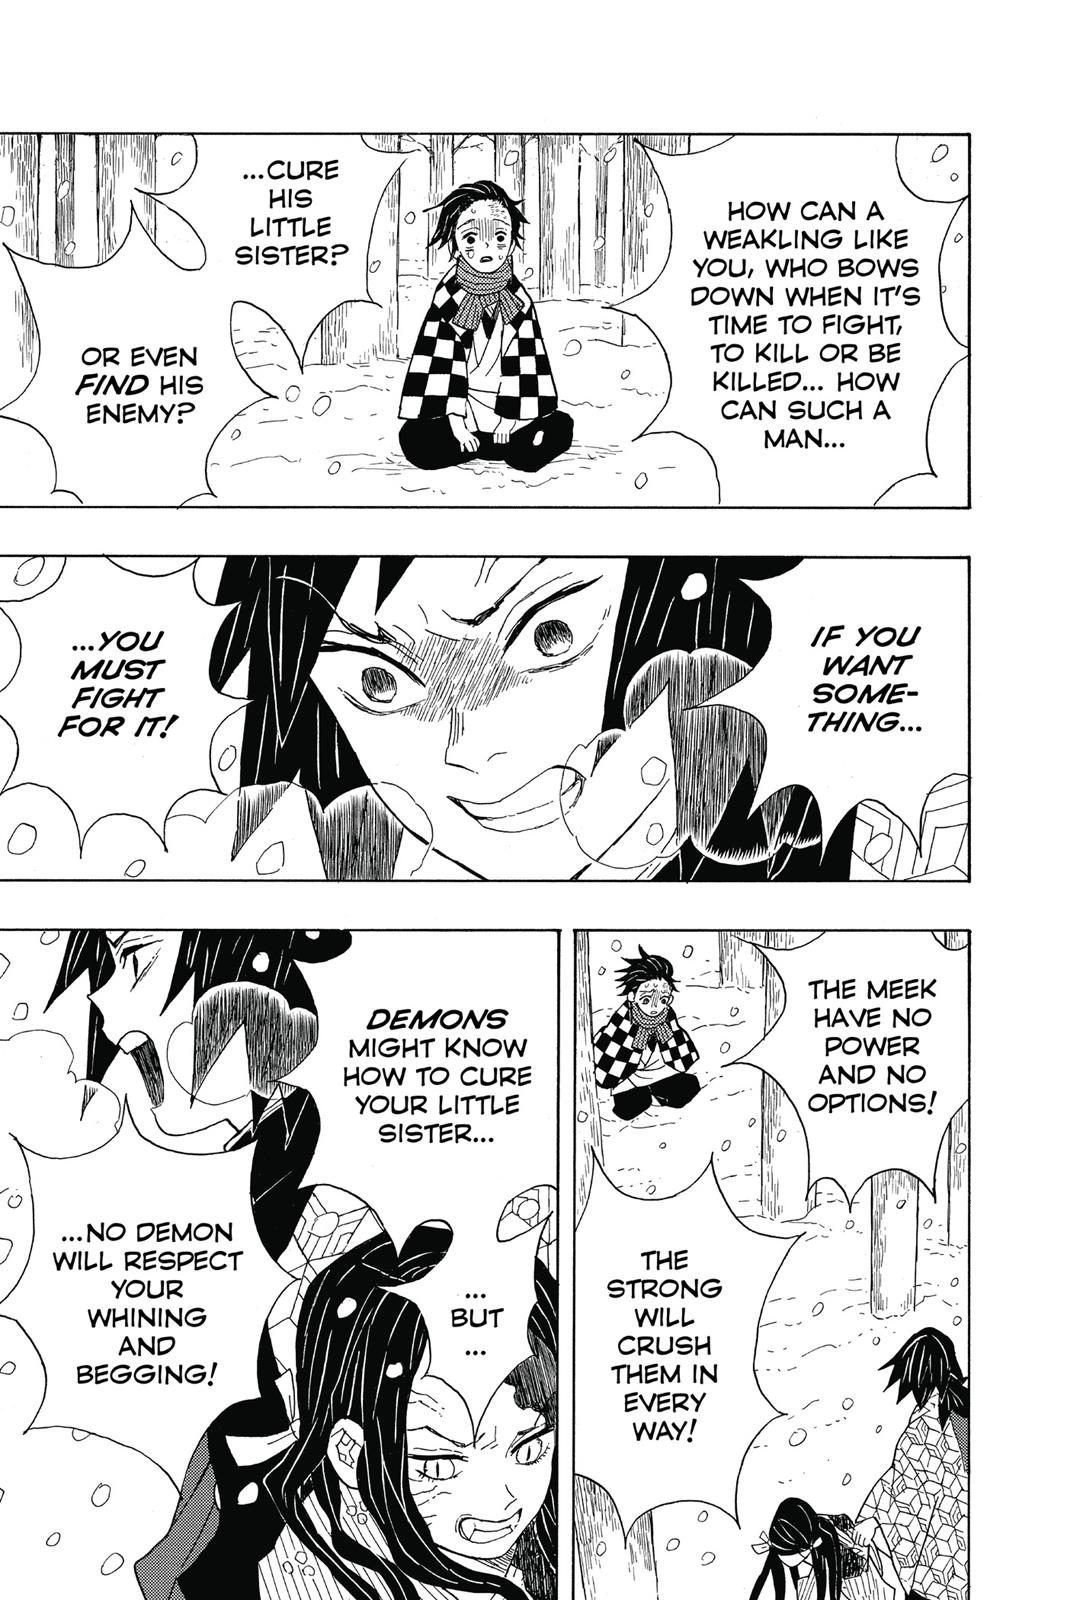 Demon Slayer Manga Manga Chapter - 1 - image 20